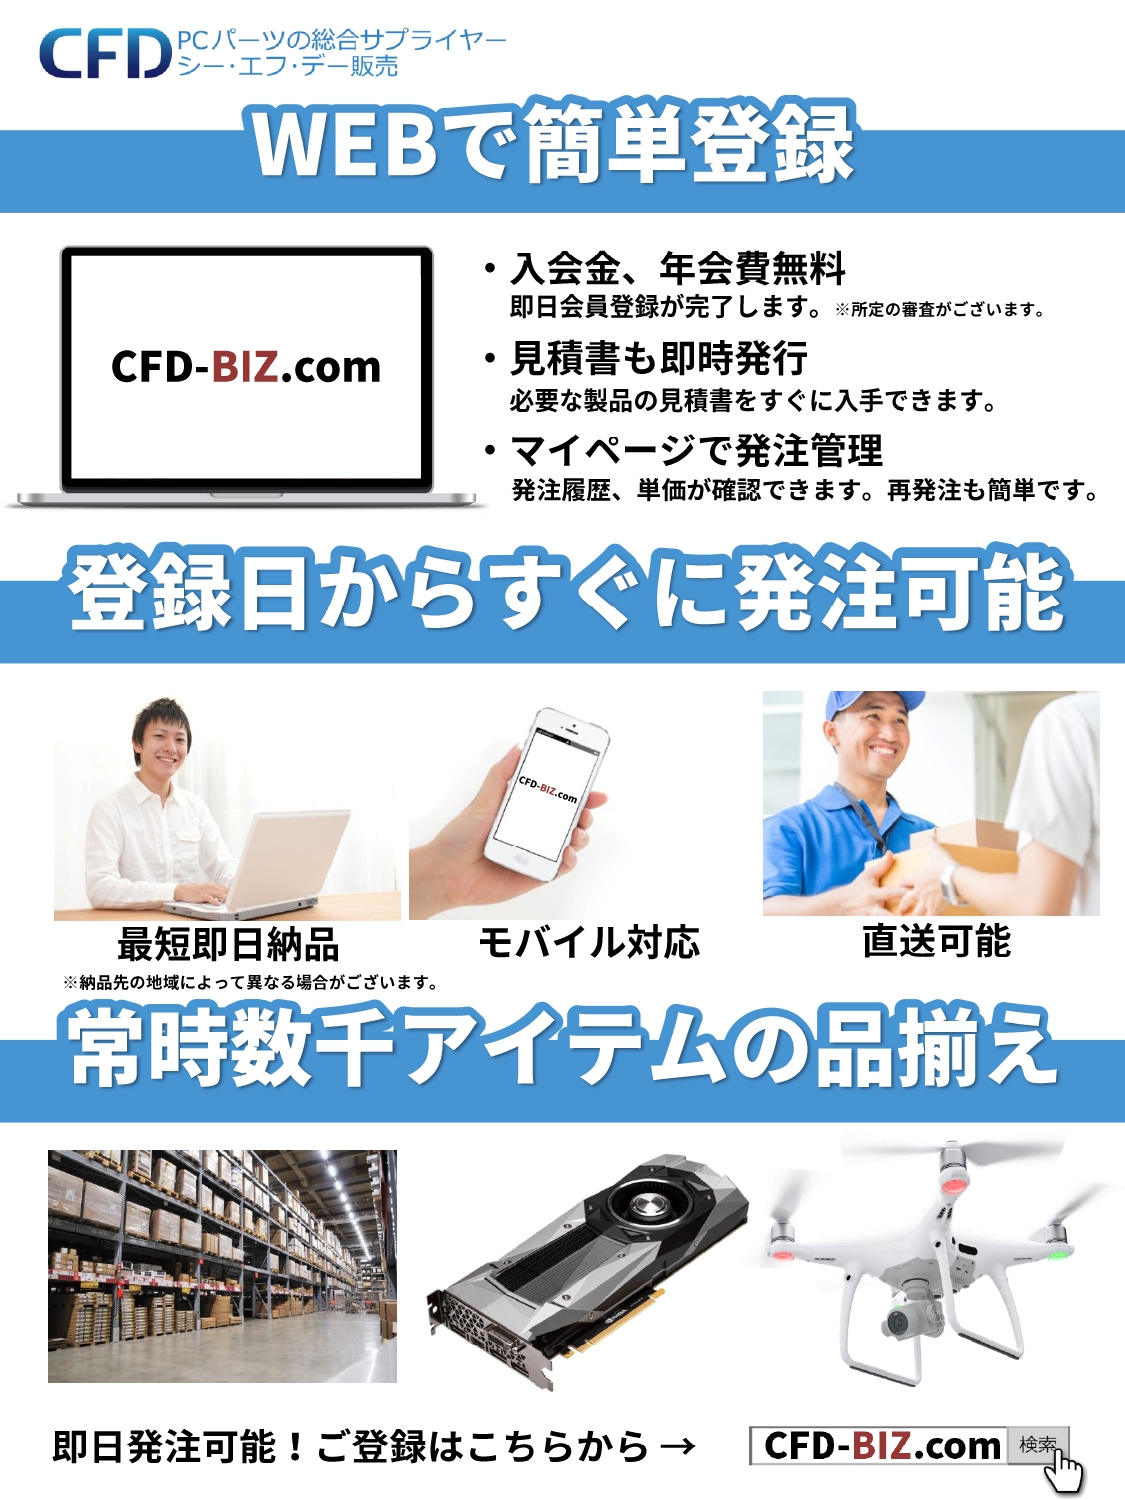 CFD-BIZ.com,チラシ,画像2